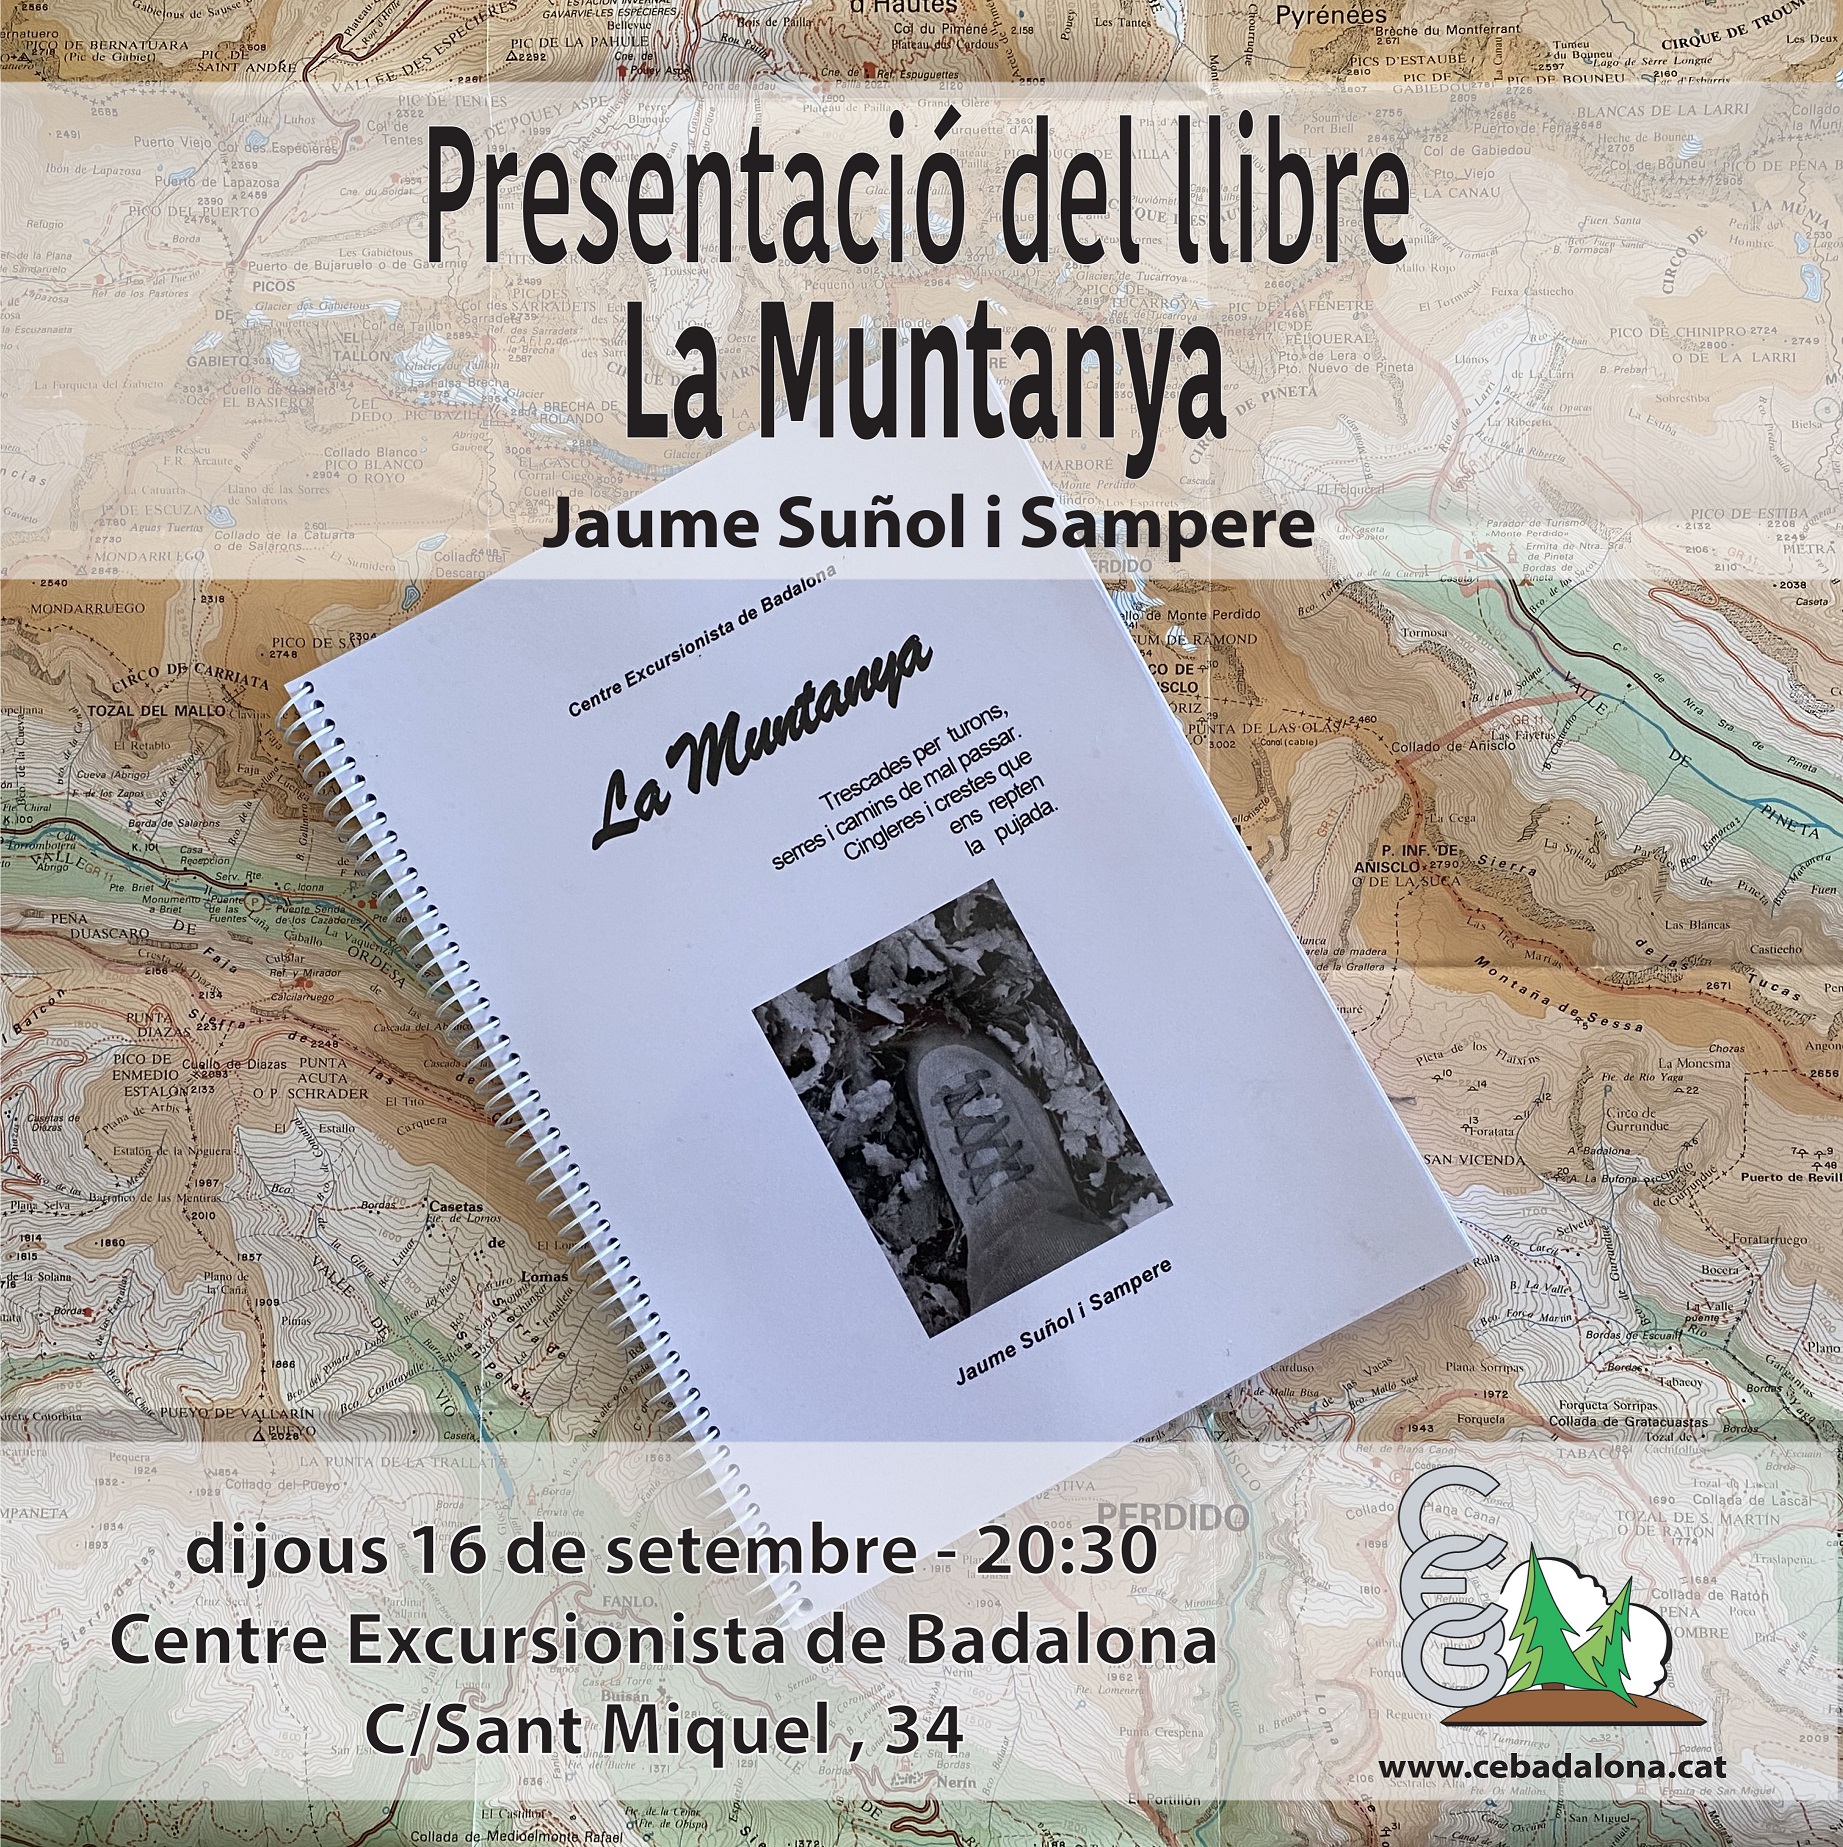 Presentació del llibre "La Muntanya" a càrrec de Jaume Suñol